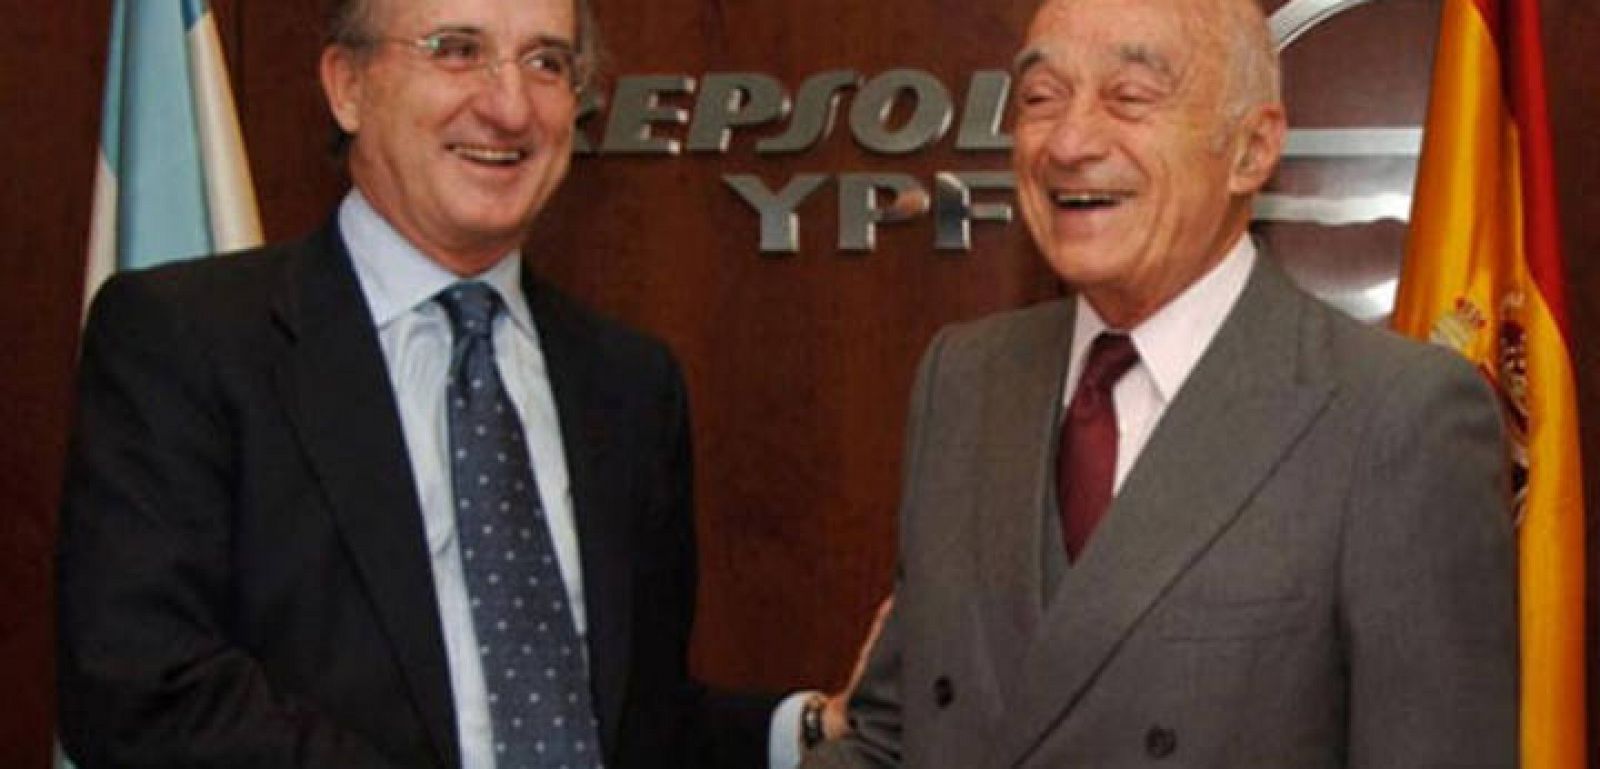  Brufau saluda a Enrique Eskenazi, patriarca de la familia de empresarios argentinos